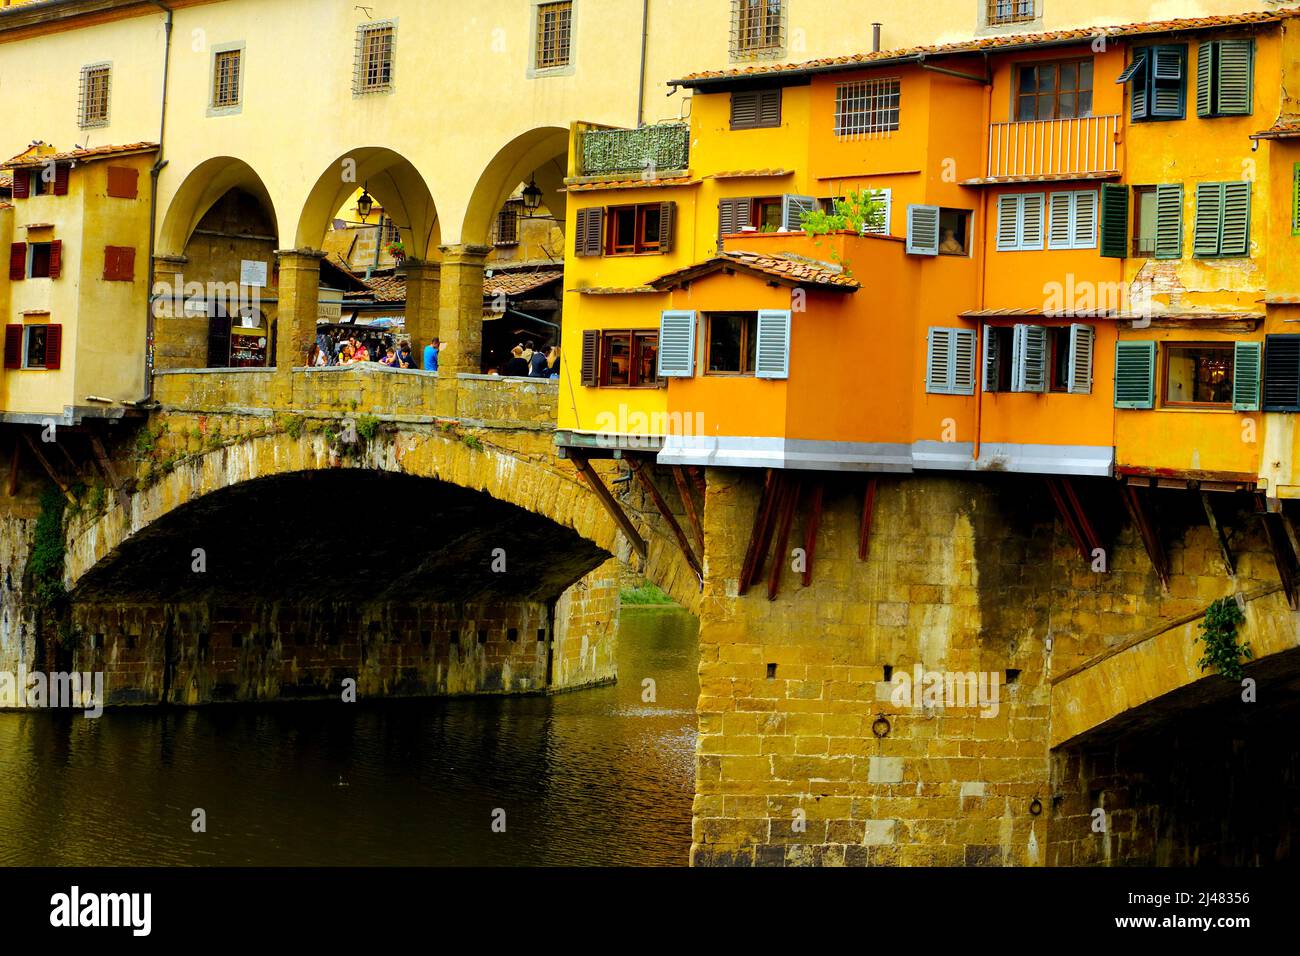 Le célèbre Ponte Vecchio est une attraction majeure à Florence Italie Banque D'Images